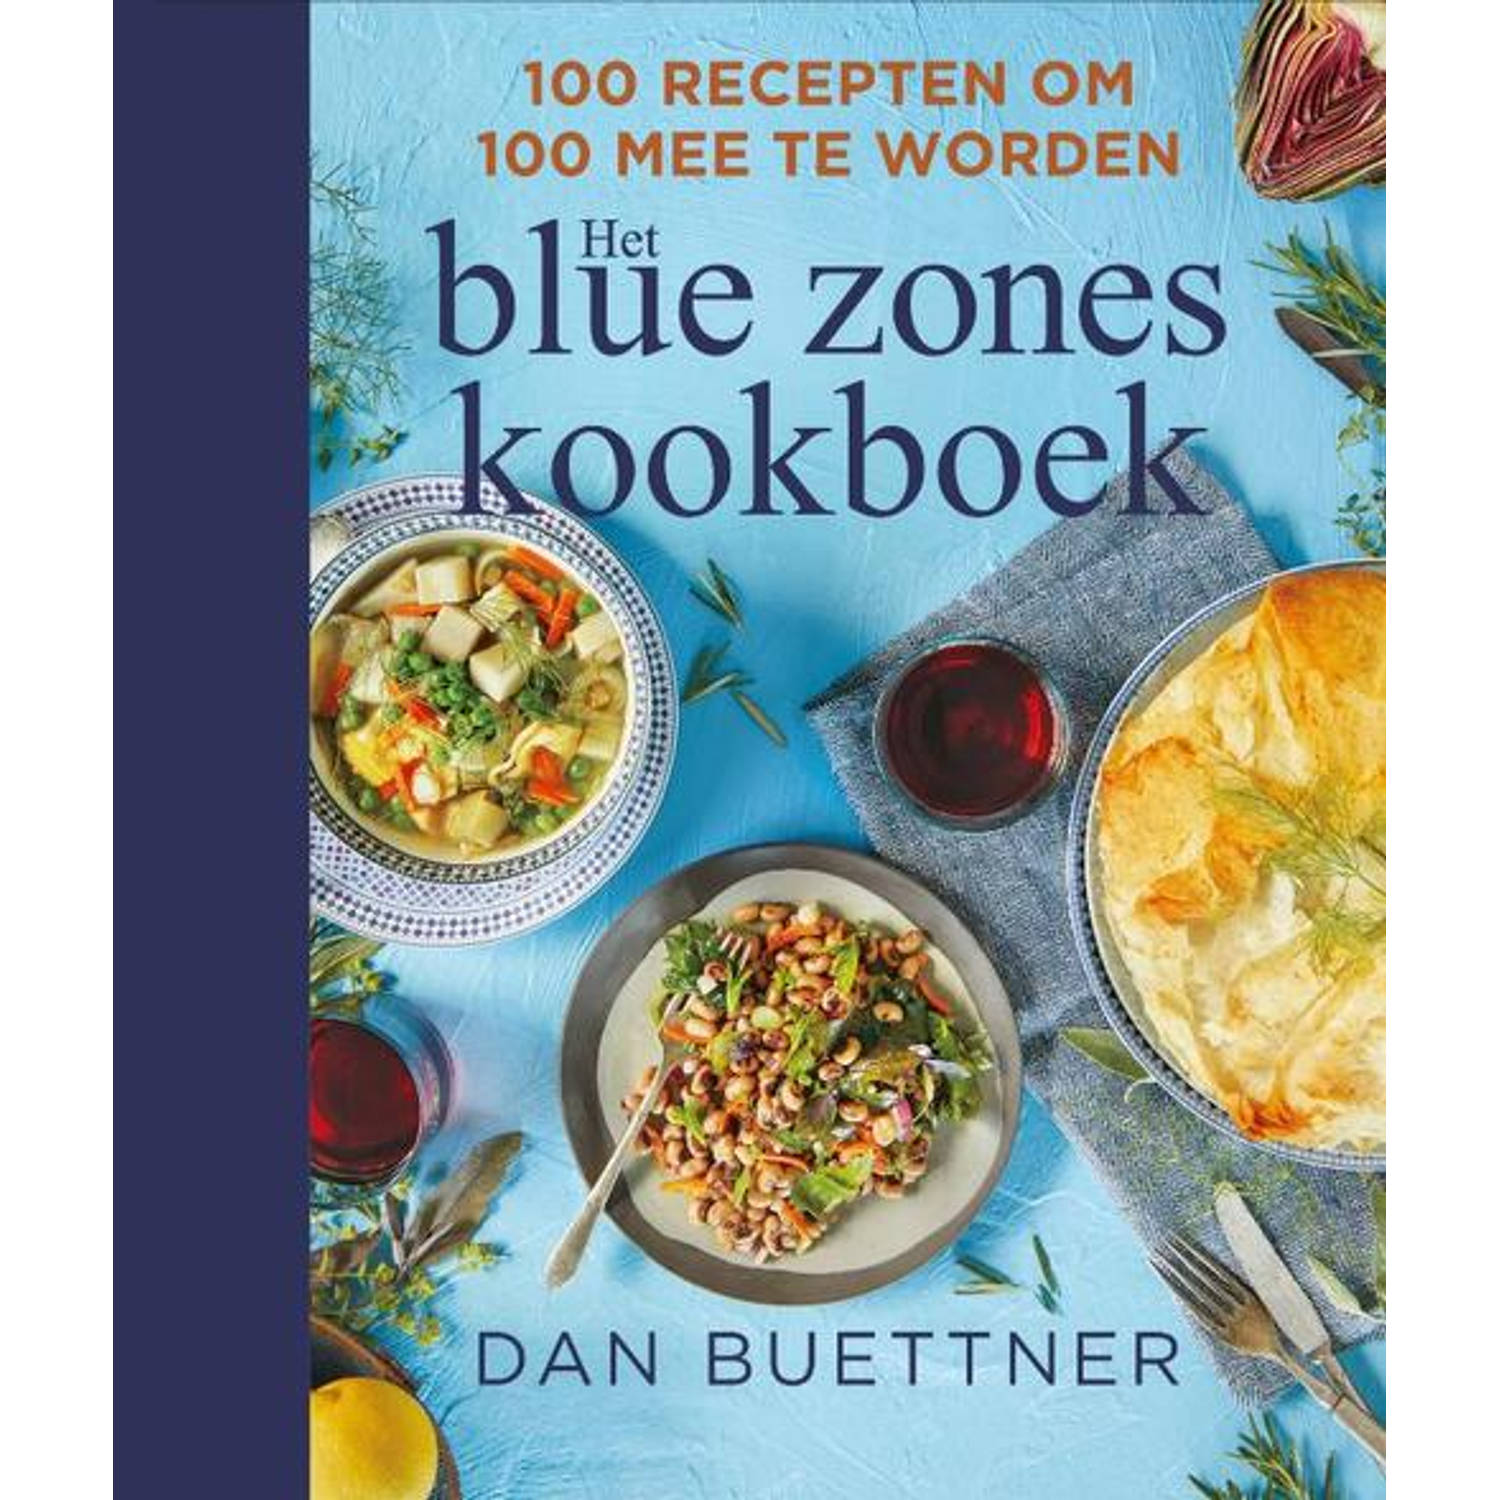 Blue zones kookboek - (ISBN:9789000371556)